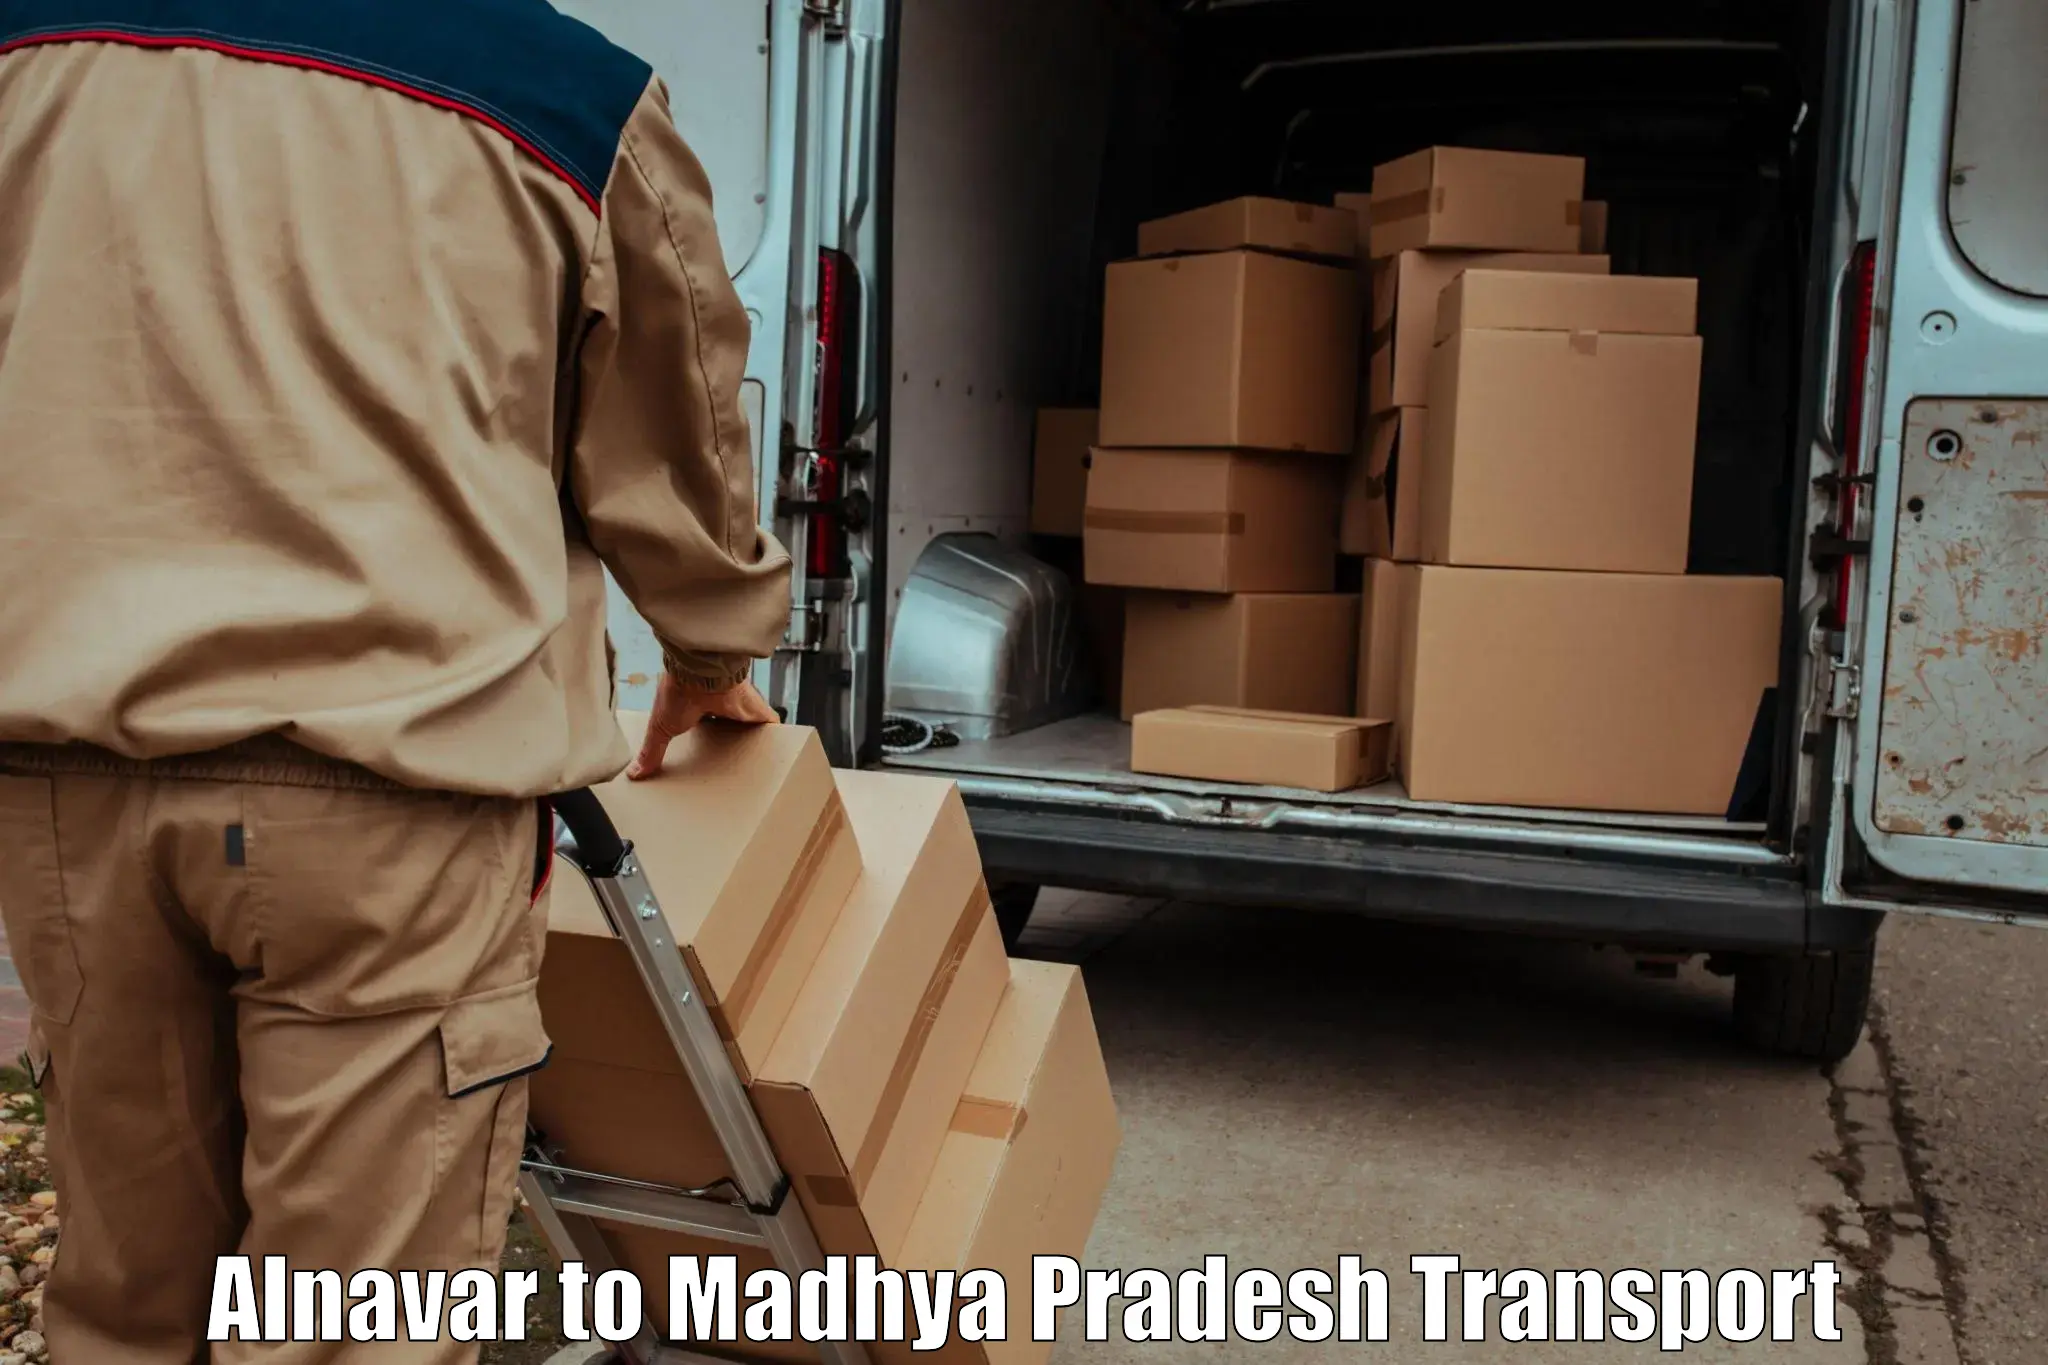 Luggage transport services Alnavar to Niwari